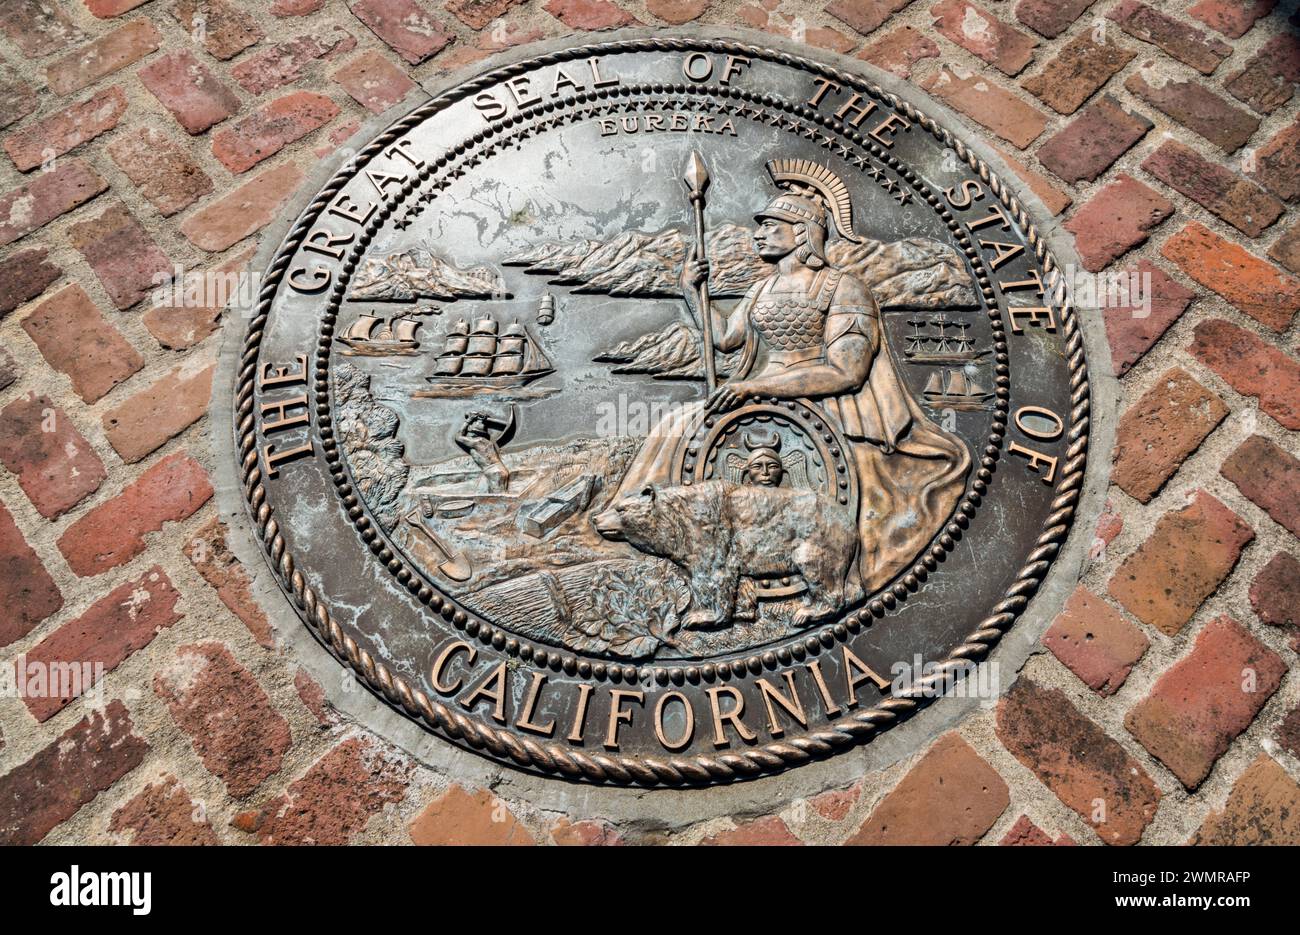 La plaque de phoque officielle en bronze de Californie est affichée dans le sentier de brique du parc à Colton Hall à Monterey, Californie Banque D'Images